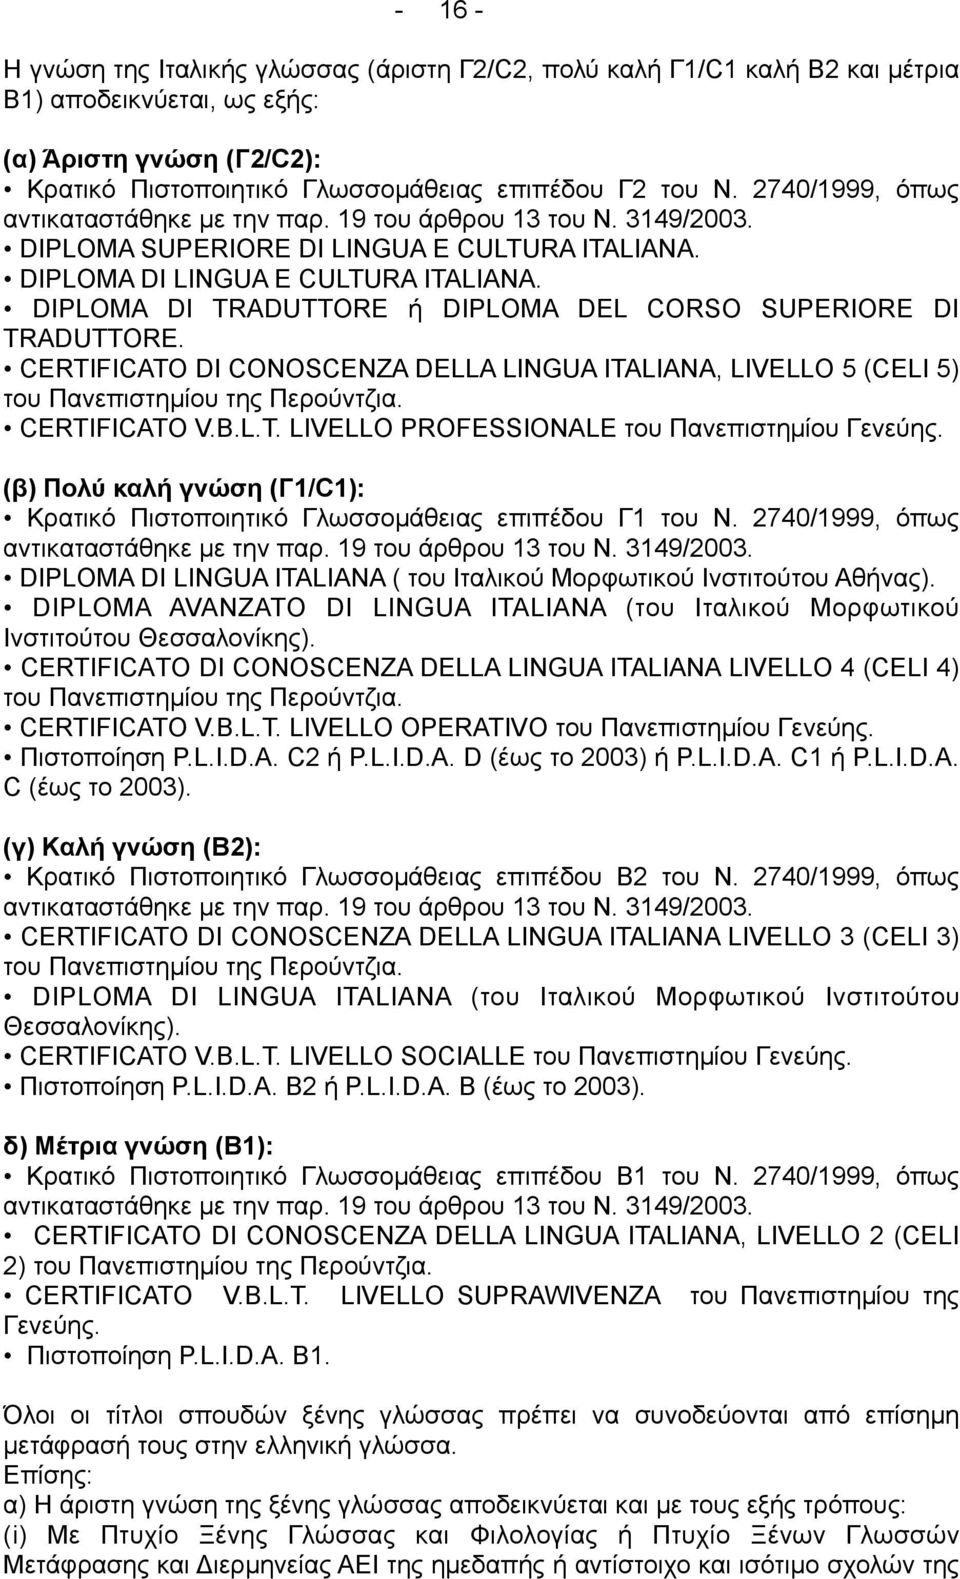 DIPLOMA DI TRADUTTORE ή DIPLOMA DEL CORSO SUPERIORE DI TRADUTTORE. CERTIFICATO DI CONOSCENZA DELLA LINGUA ITALIANA, LIVELLO 5 (CELI 5) του Πανεπιστηµίου της Περούντζια. CERTIFICATO V.B.L.T. LIVELLO PROFESSIONALE του Πανεπιστηµίου Γενεύης.